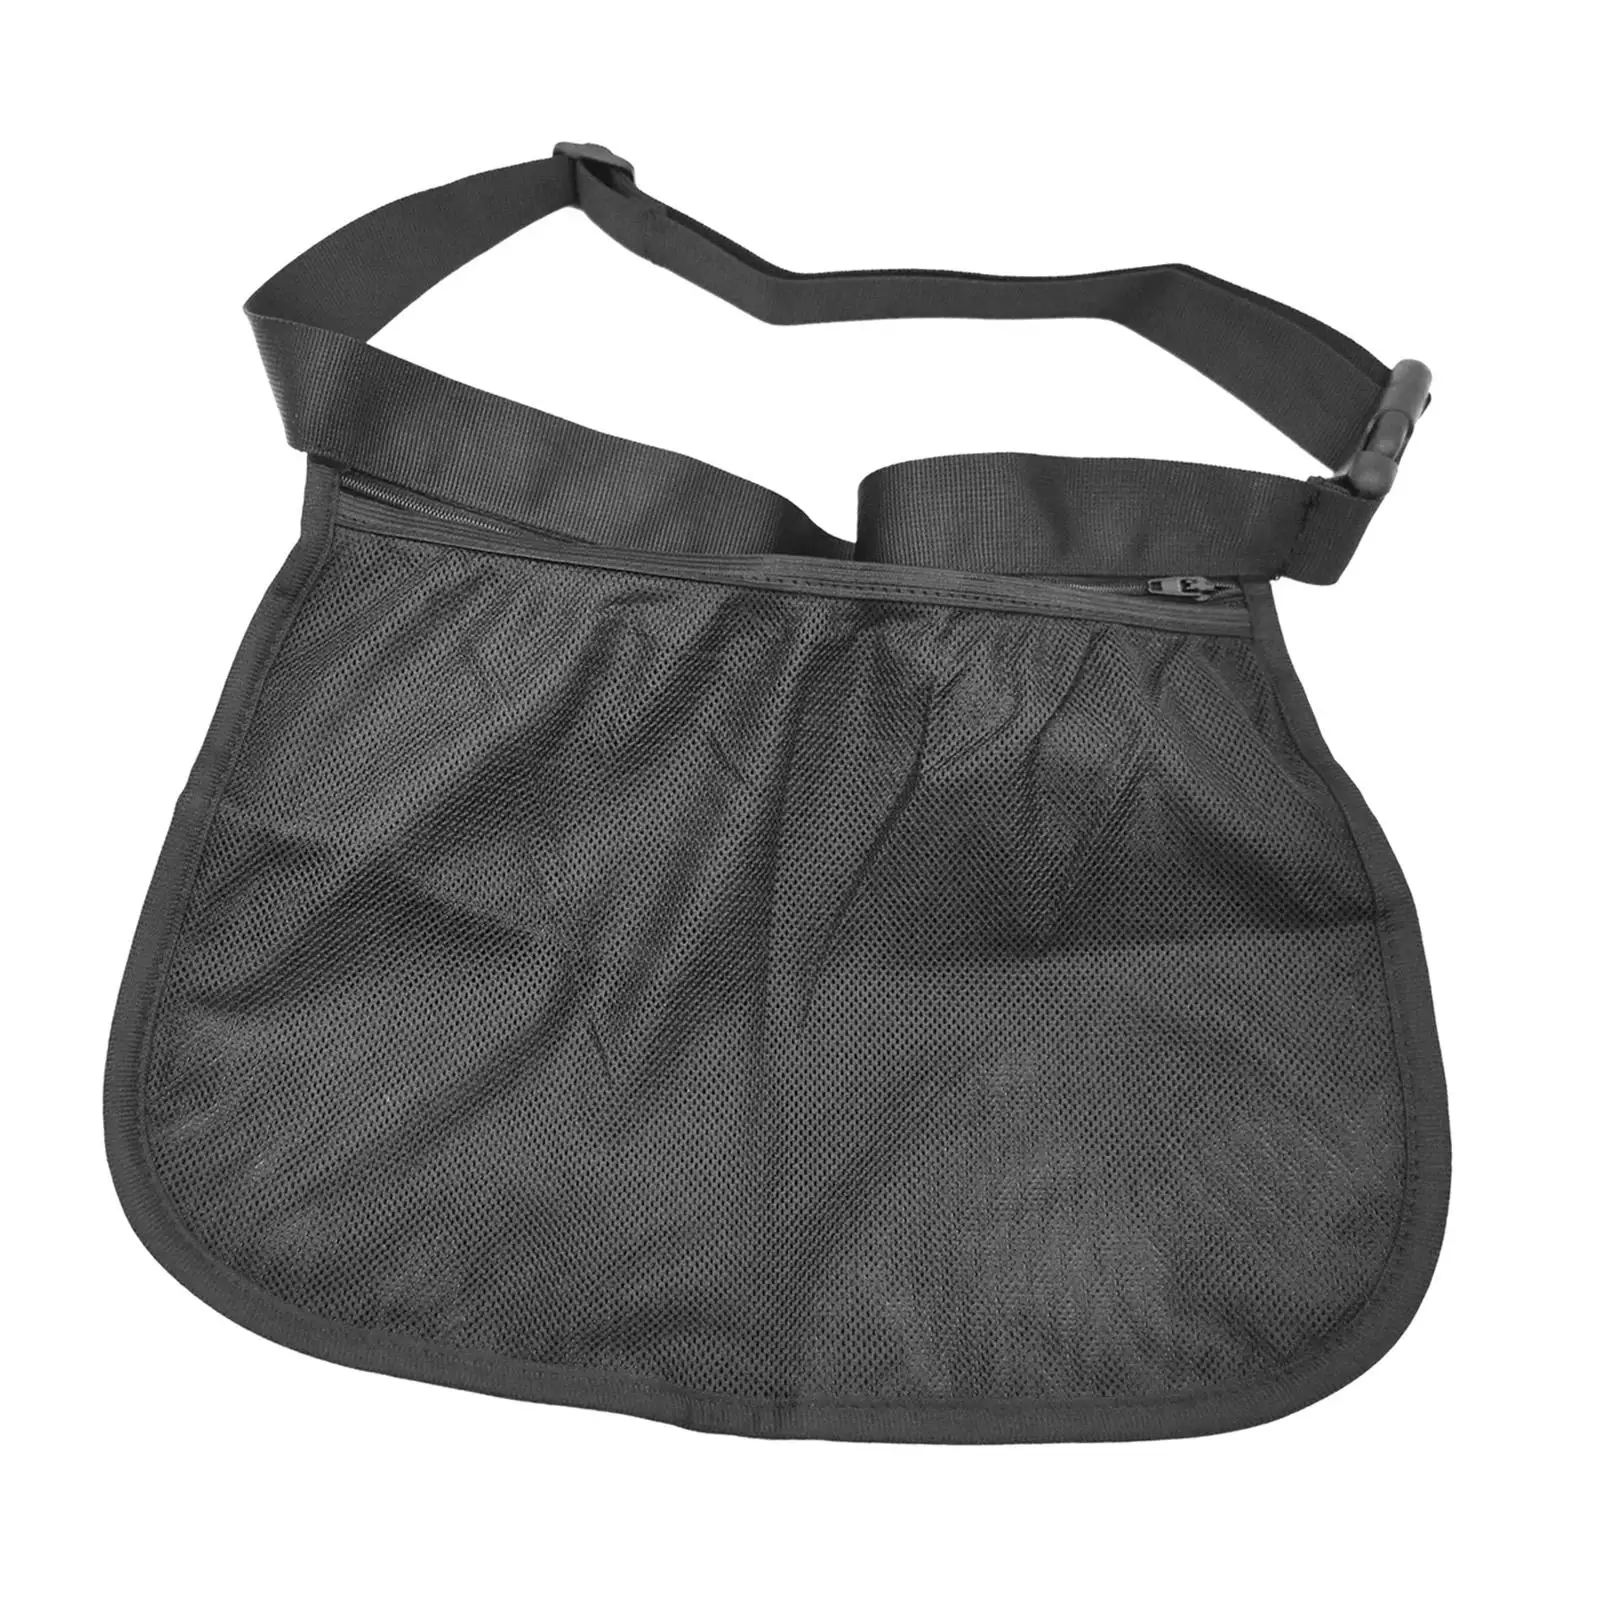 Tennis Ball Holder Outdoor Ball Storage Bag for Fitness Exercise Women Men